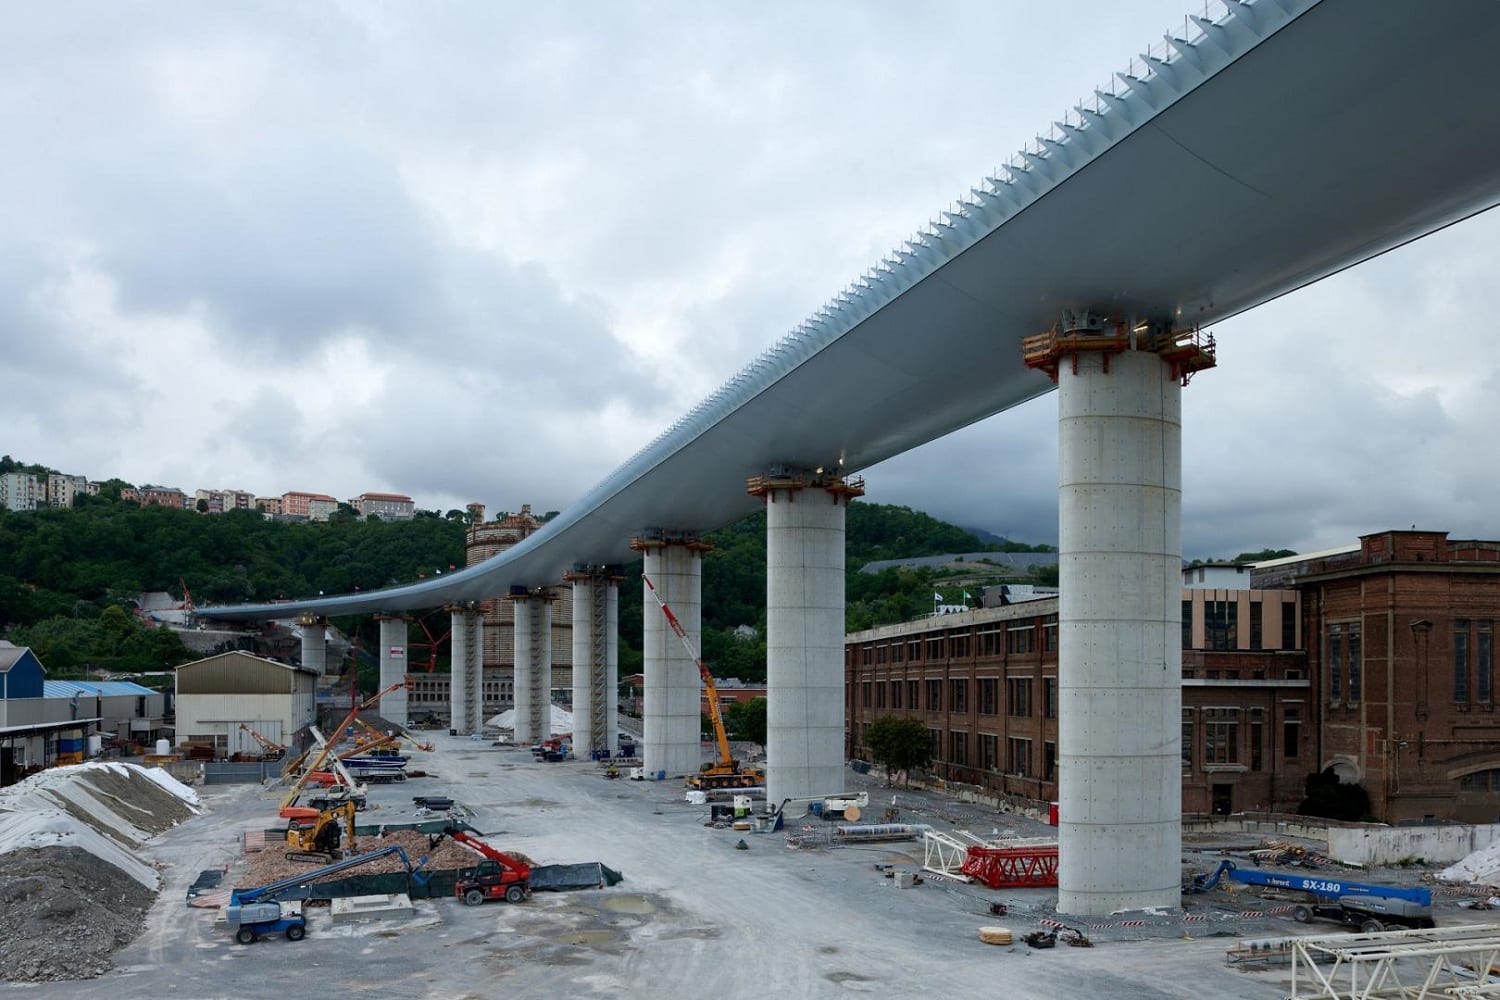 L'inaugurazione del nuovo Ponte di Genova, dopo la tragedia